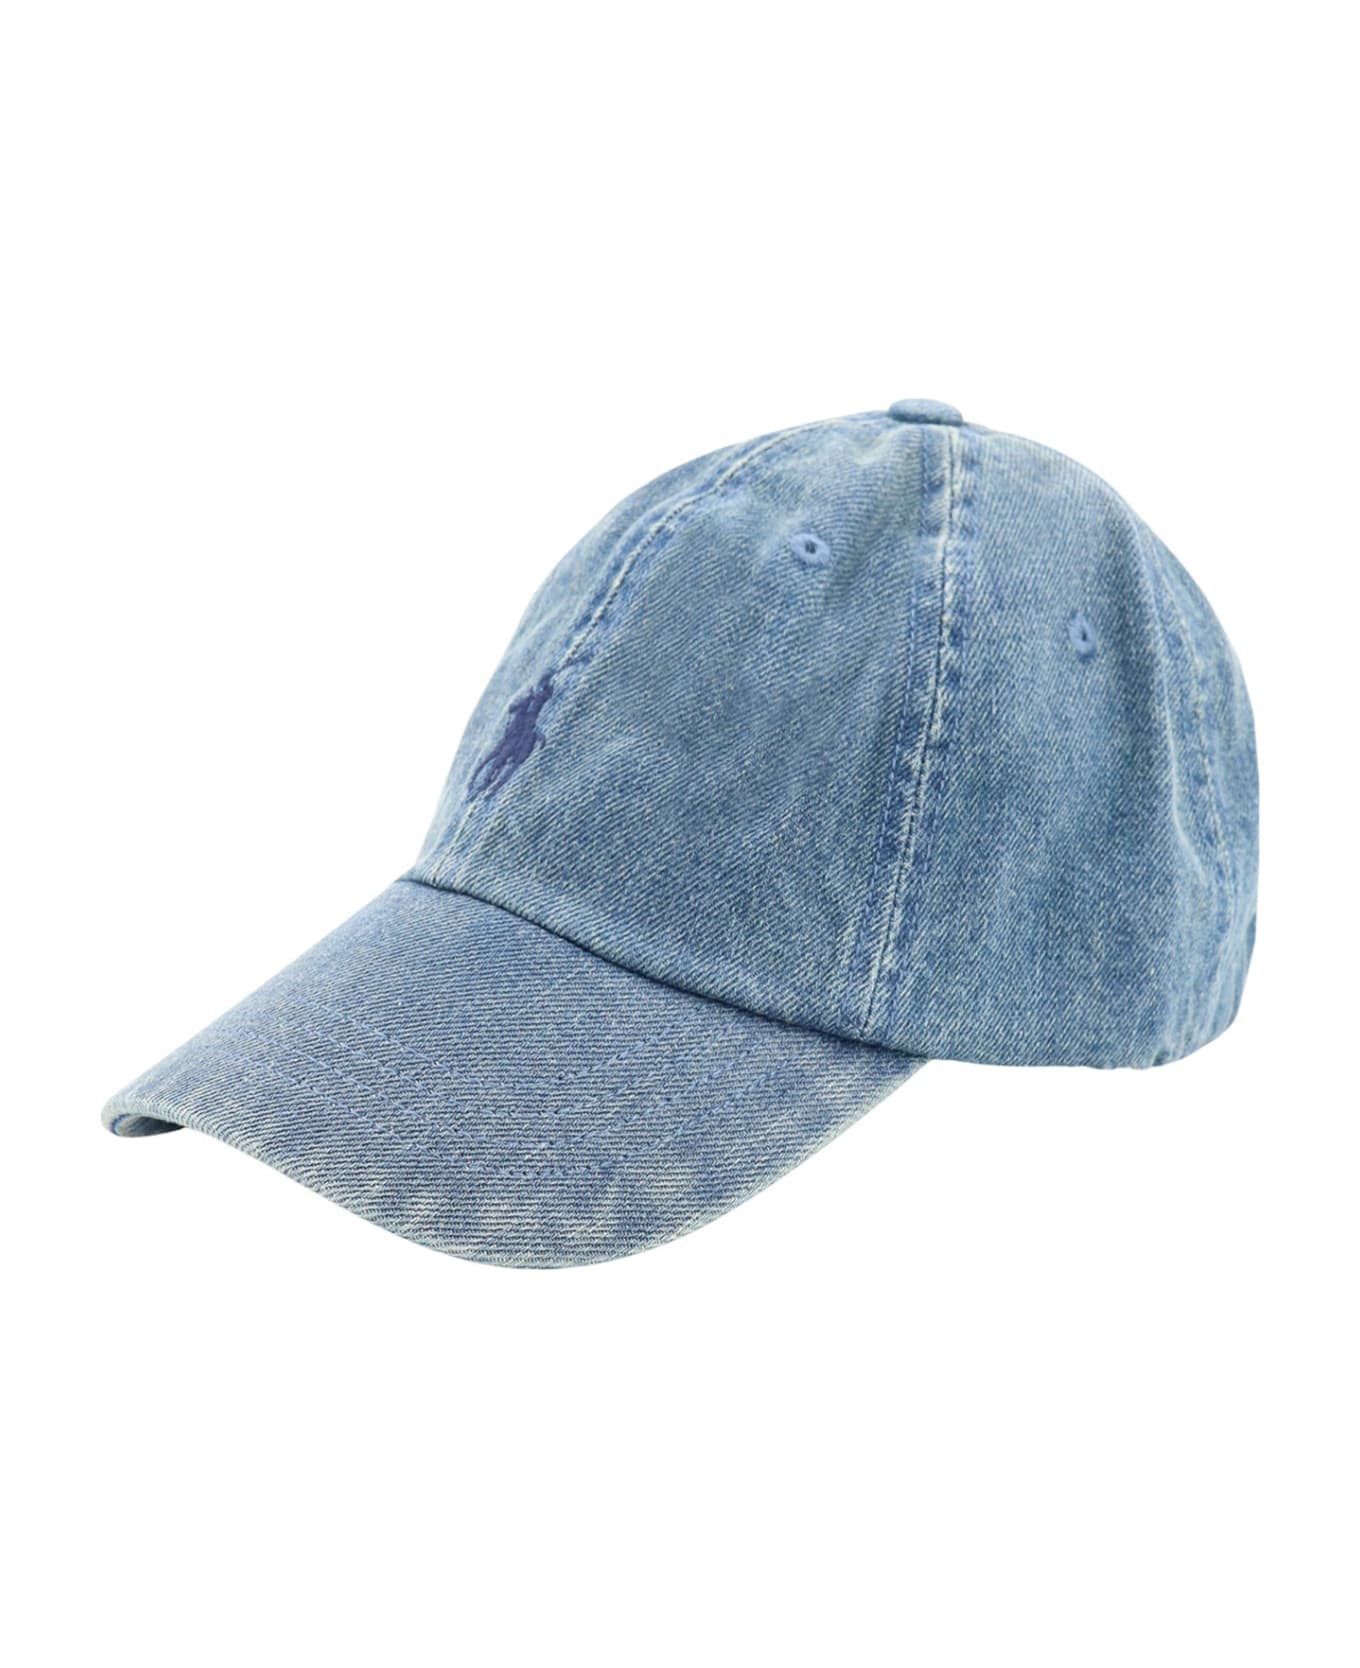 Ralph Lauren Hat - Denim 帽子